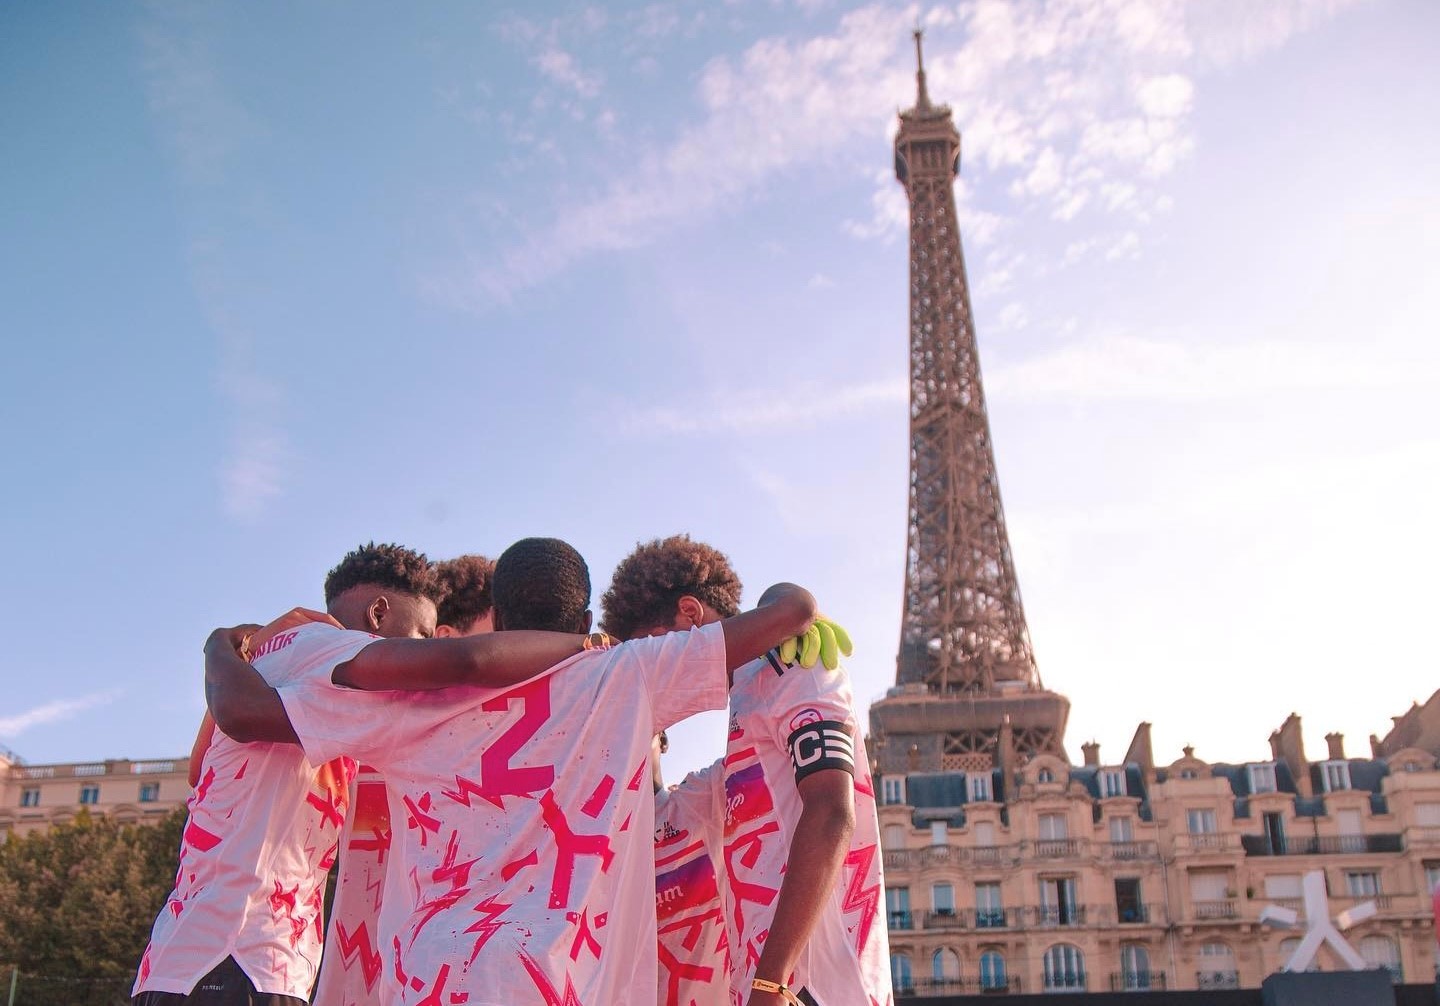 Le tournoi Impulstar a lieu à un pas de la Tour Eiffel. Impulstar/Sofy Descours